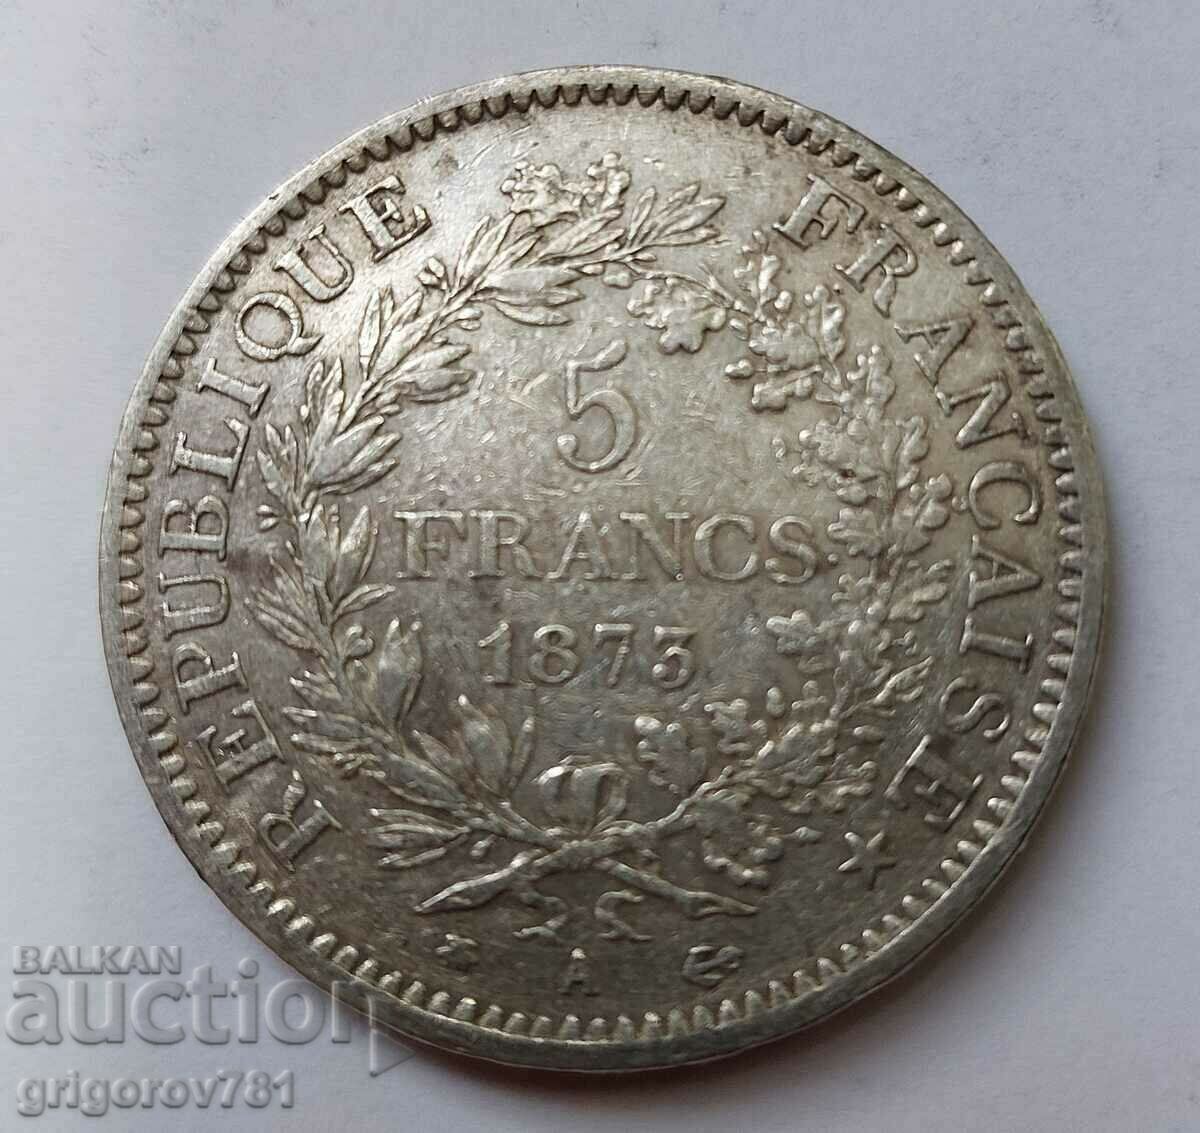 Ασημένιο 5 φράγκα Γαλλία 1873 Α - ασημένιο νόμισμα # 32